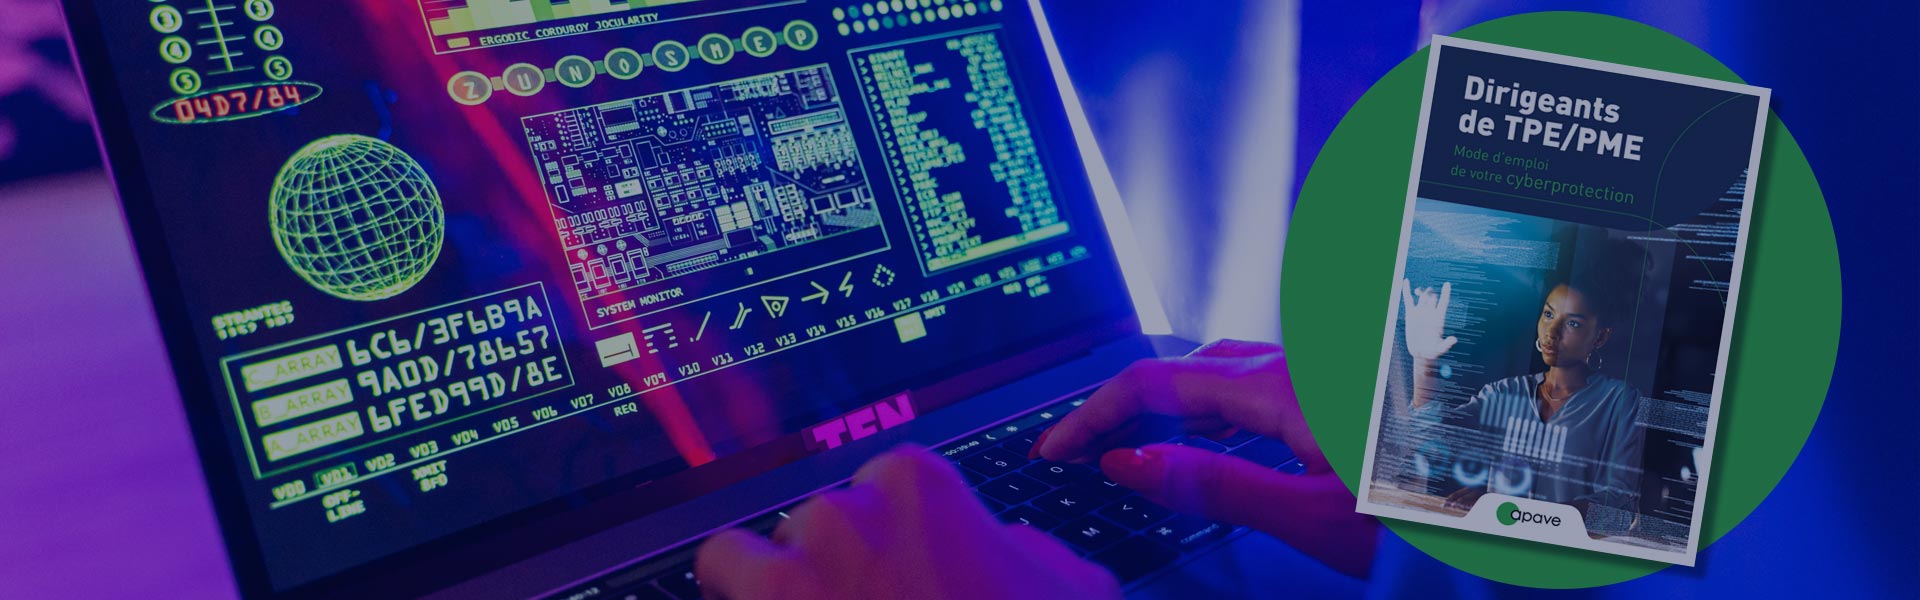 Hacker derrière son ordinateur et couverture livre blanc cyberprotection Apave